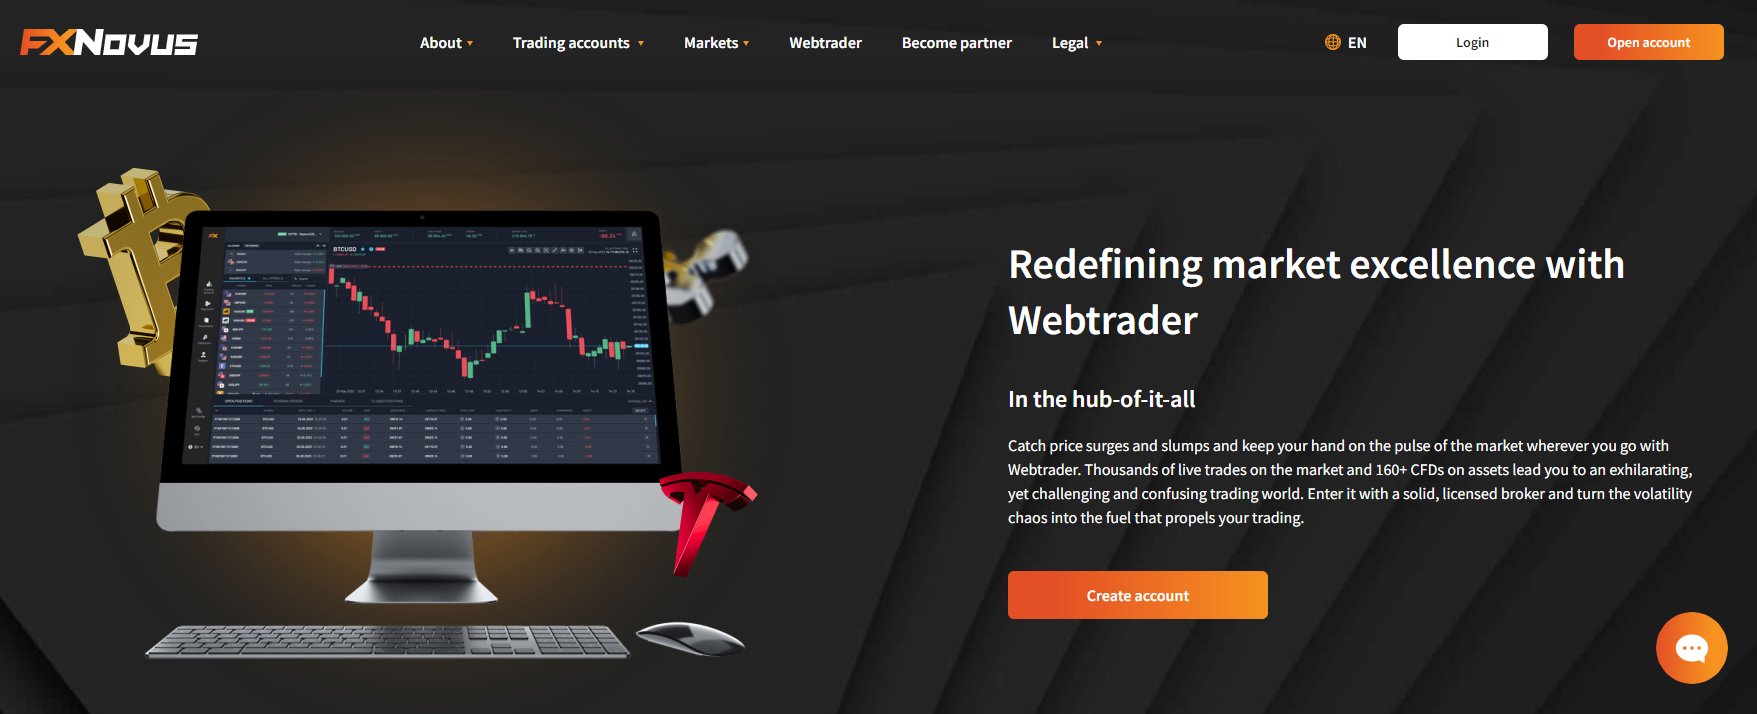 Pagina WebTrader di FXNovus che mostra grafici, indicatori e strumenti di trading